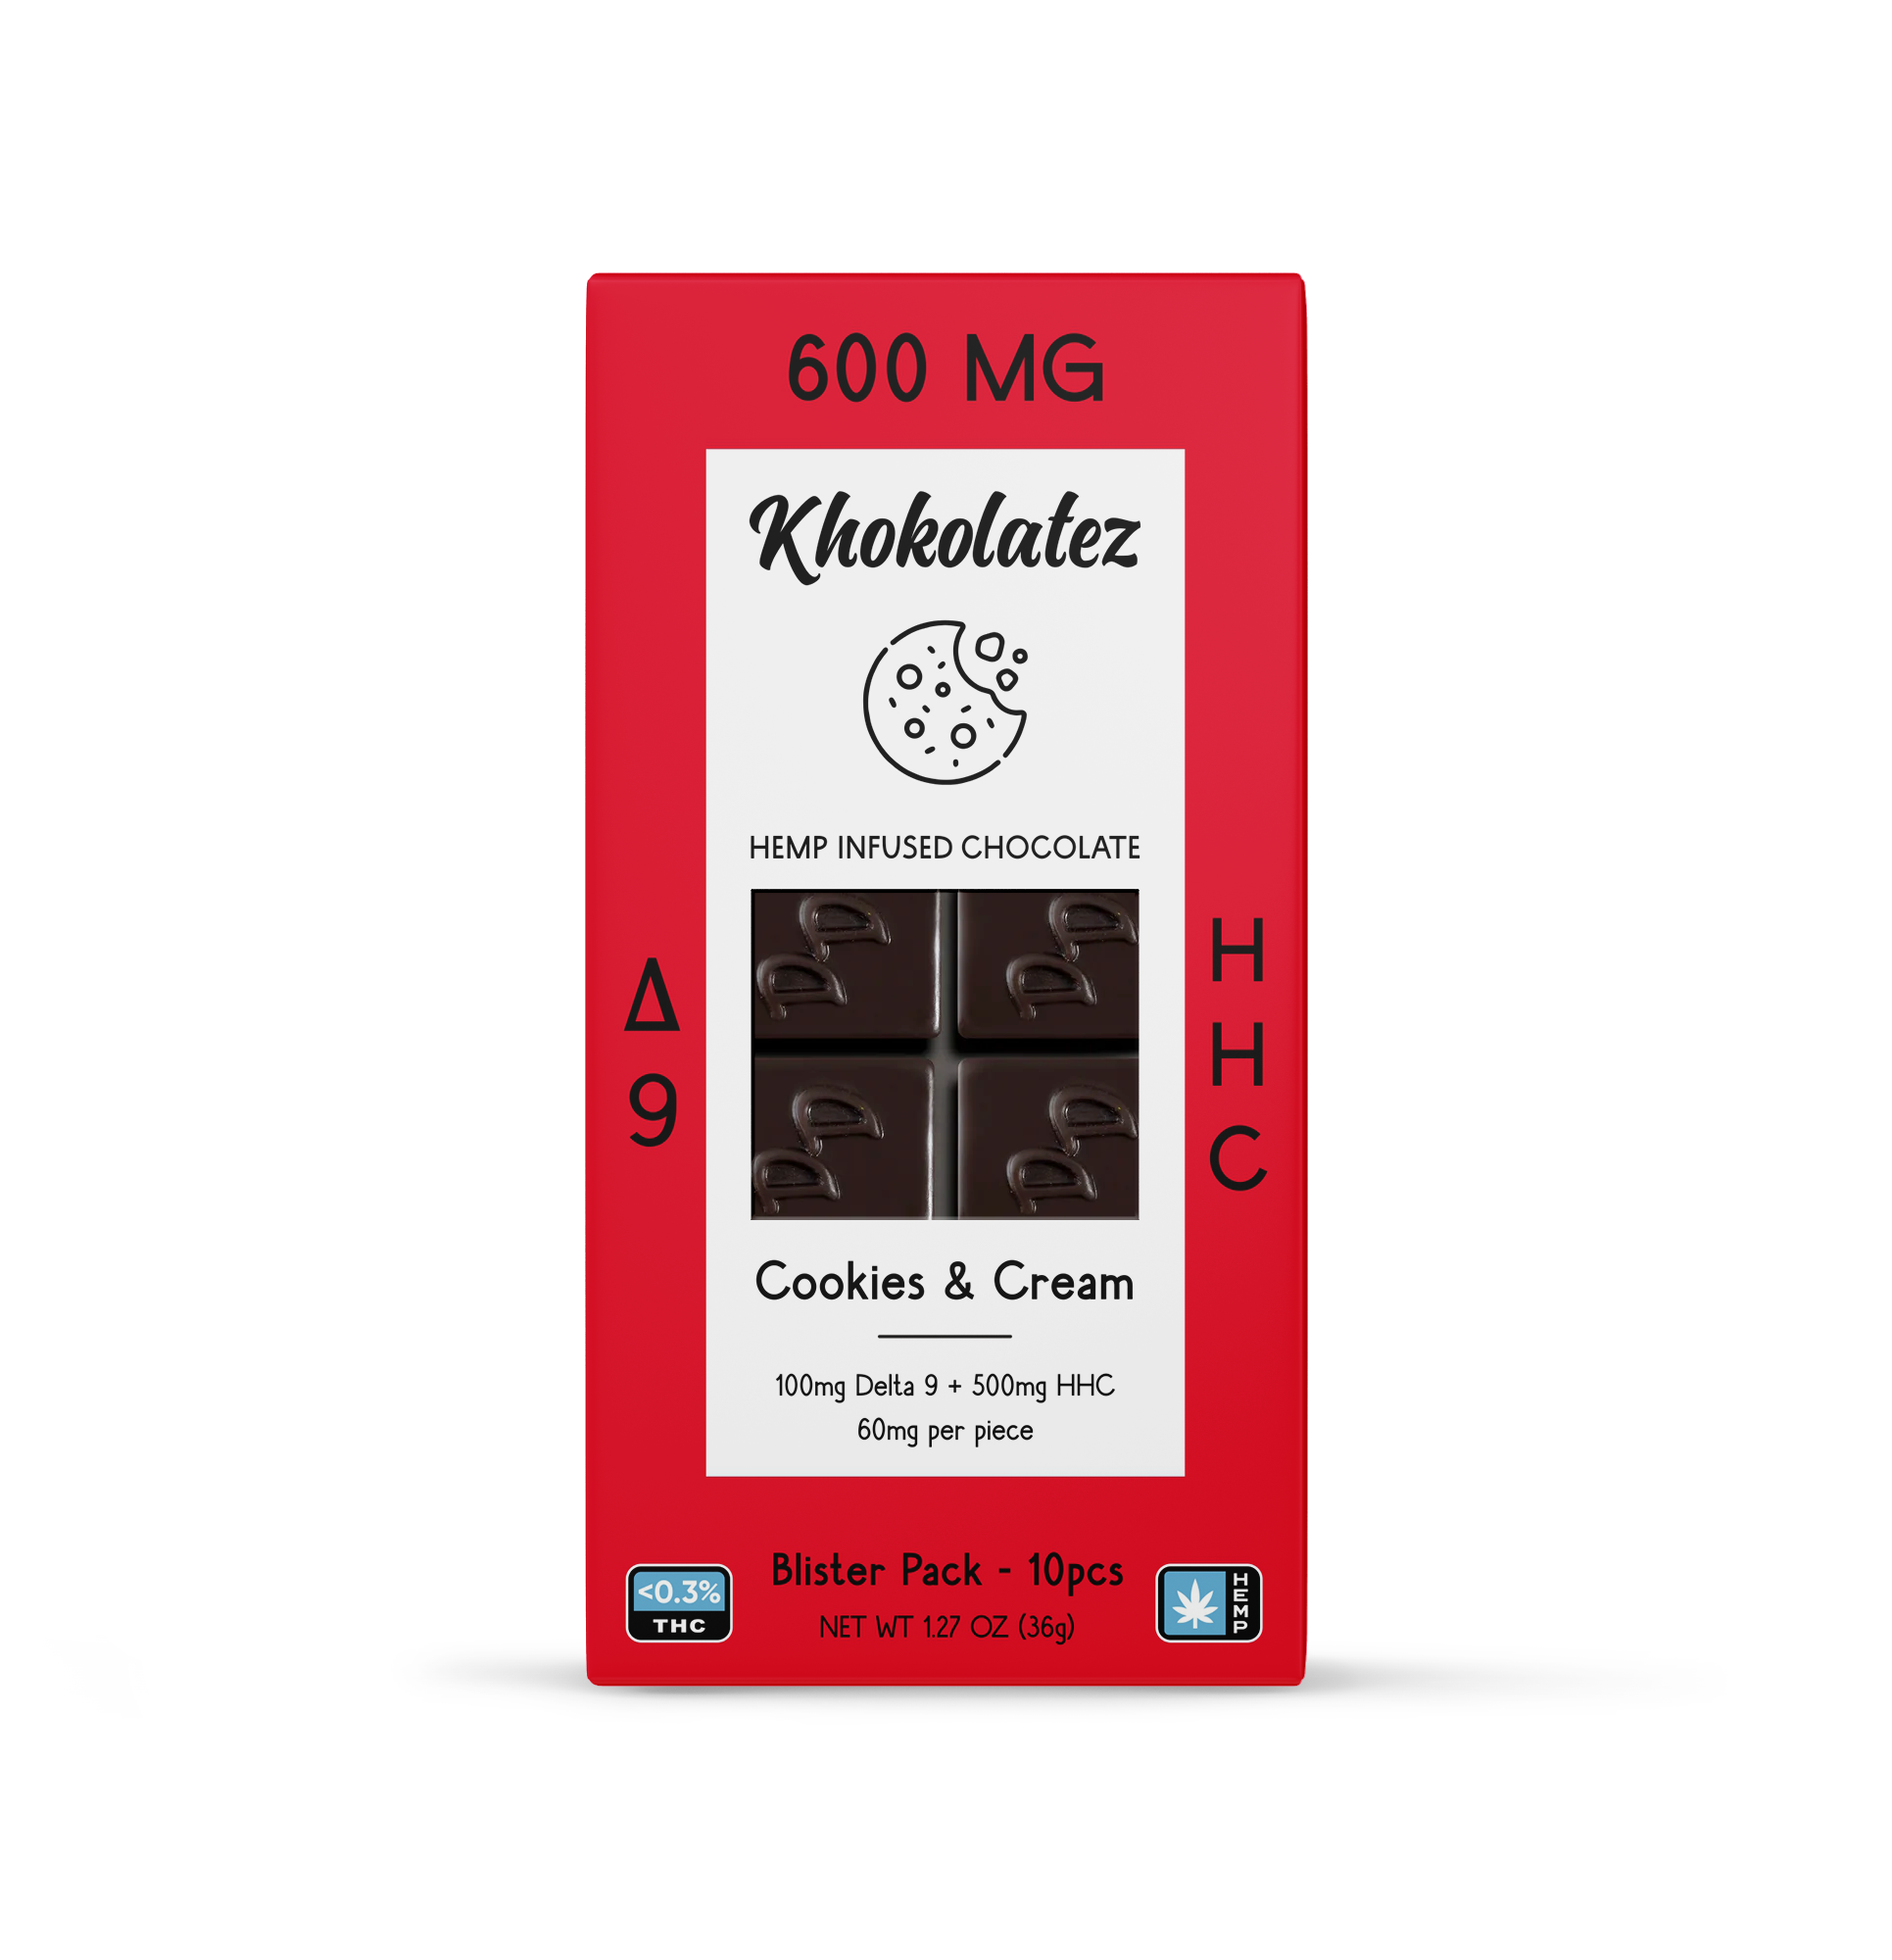 Khokolatez D9+HHC Chocolates - Unit